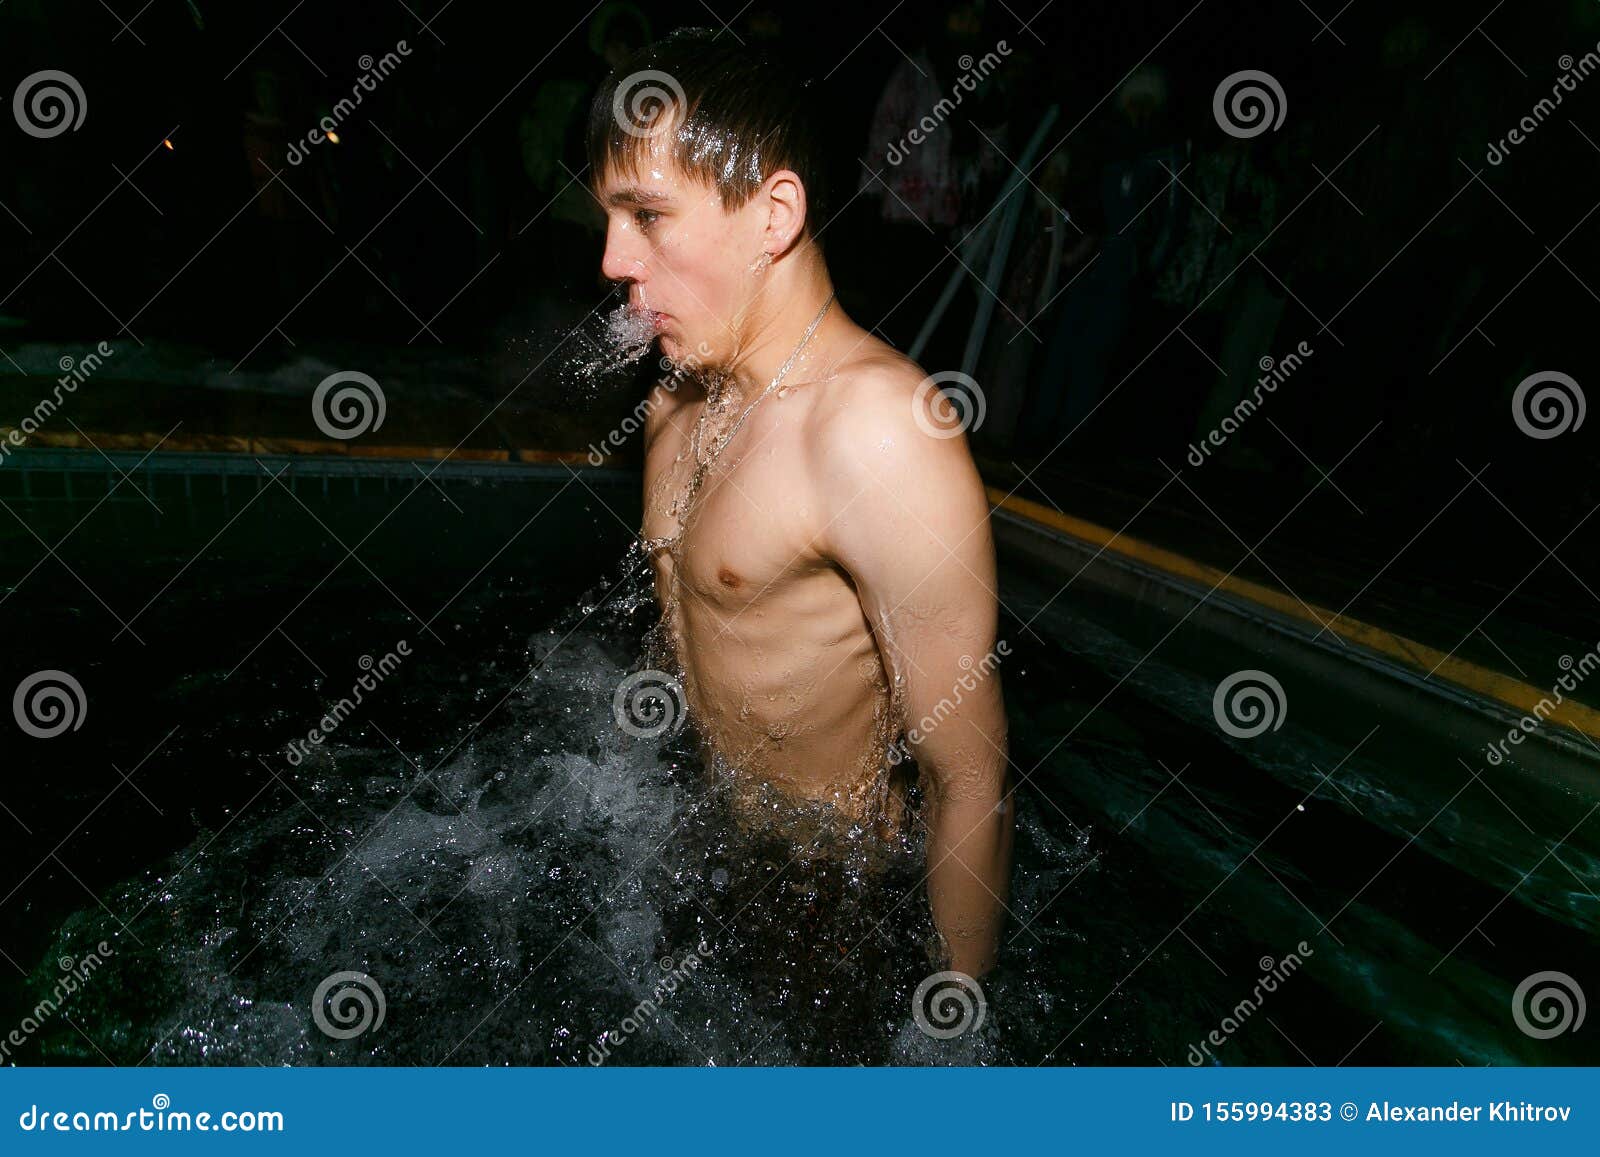 Naked Men At Bath Time